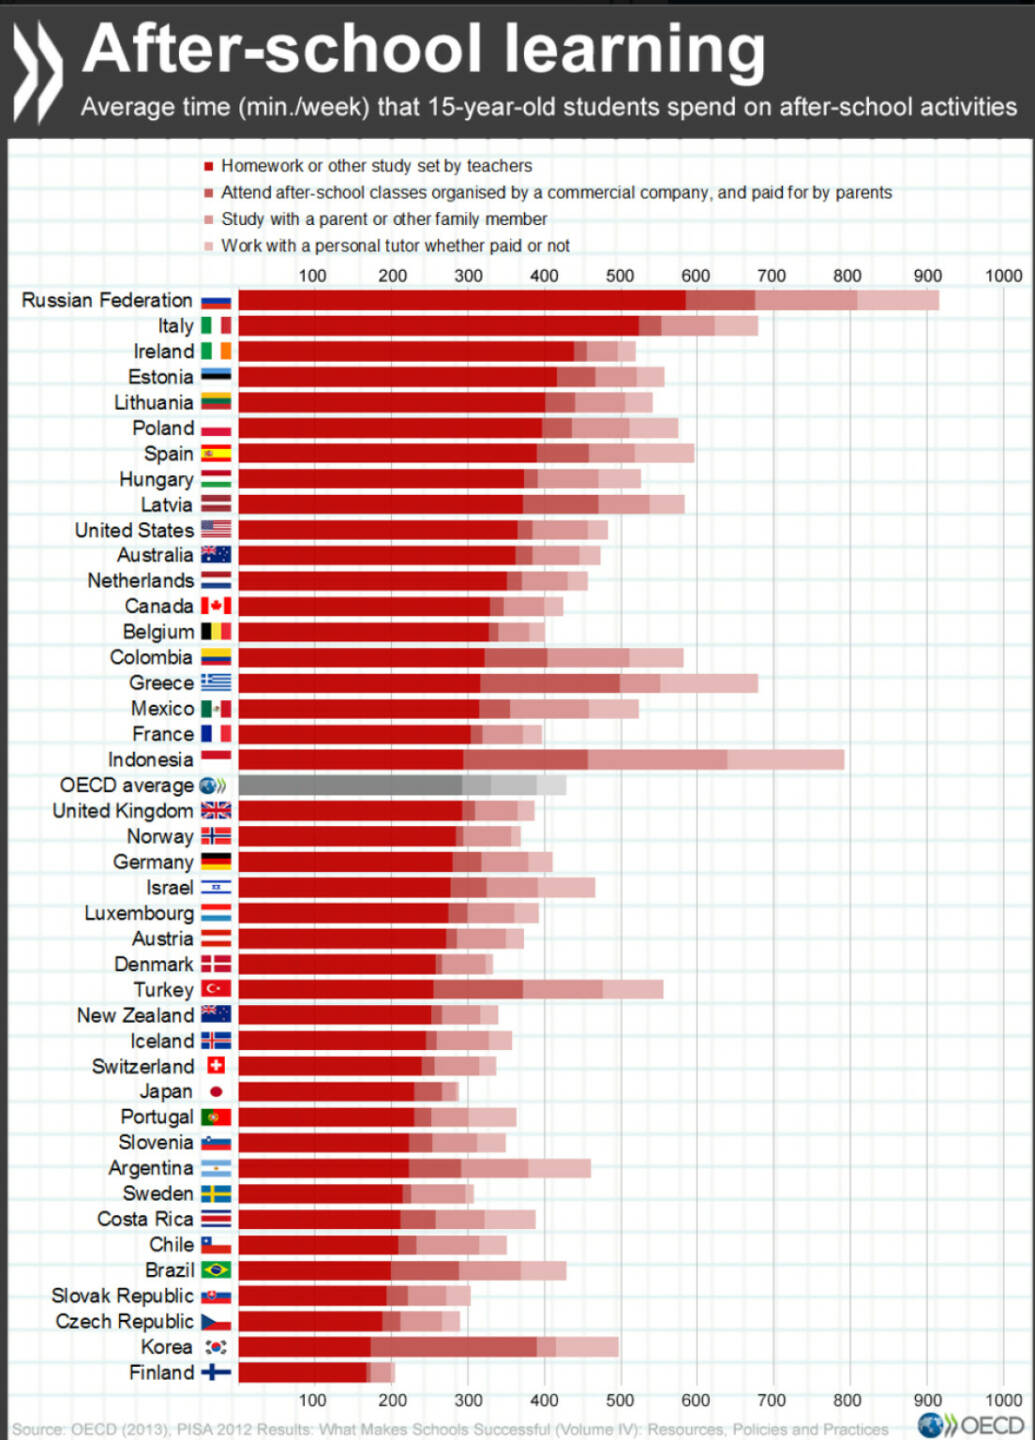 In welchen Ländern wenden 15-Jährige die meiste Zeit für Hausaufgaben auf? http://bit.ly/1PQzlNx